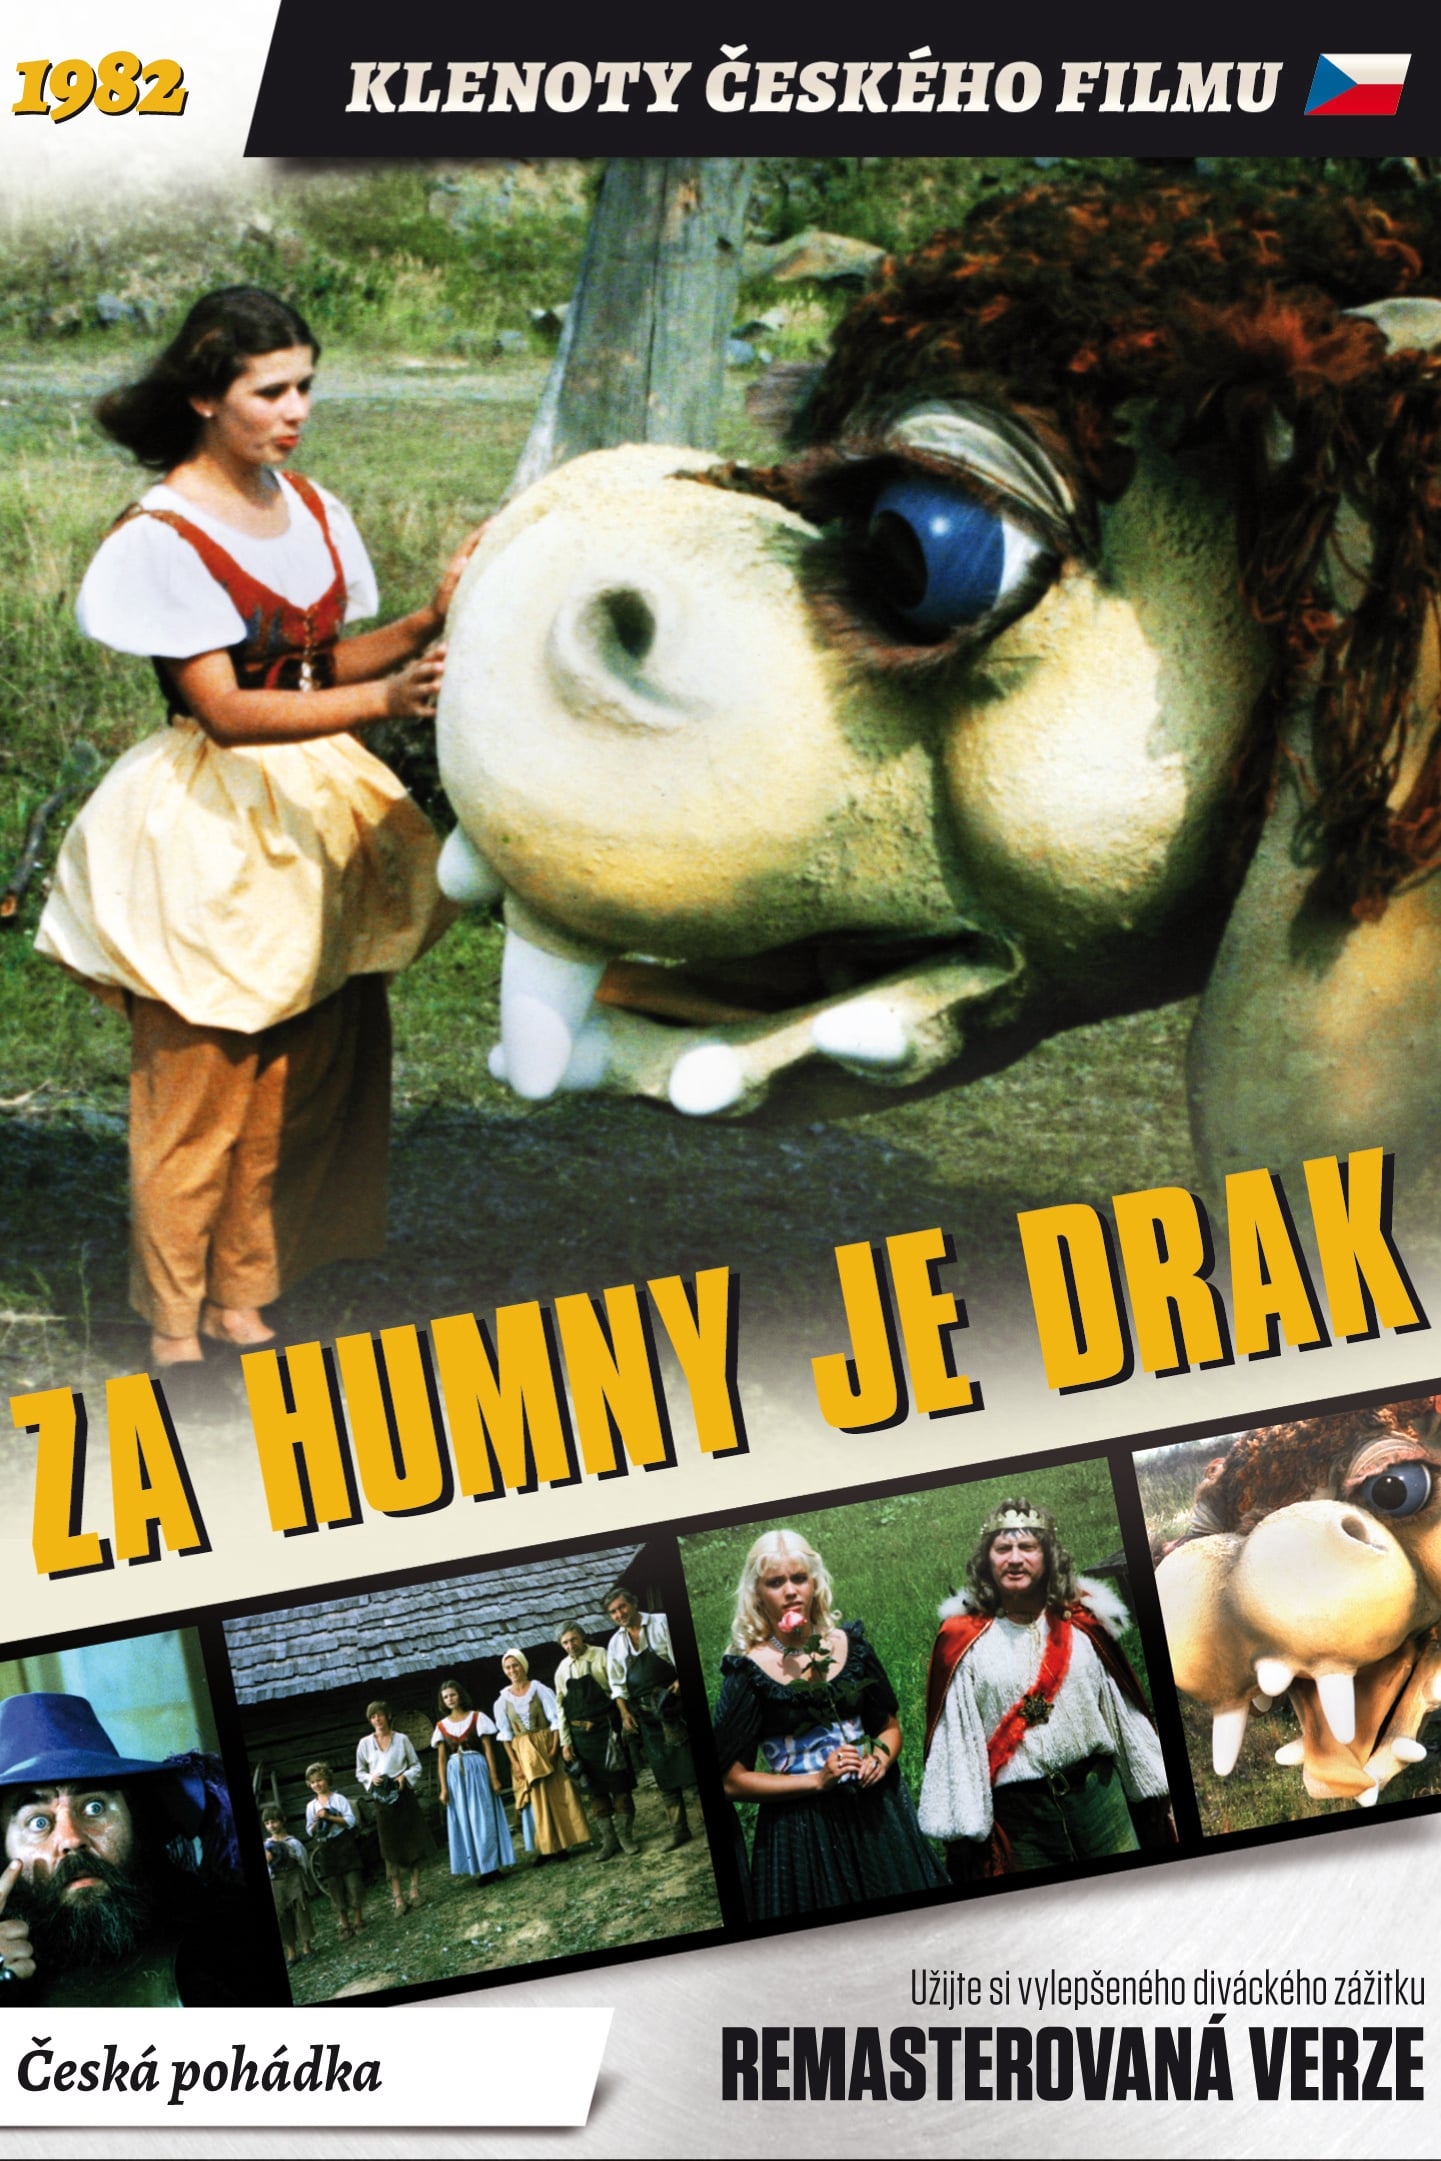 Za humny je drak (1983)